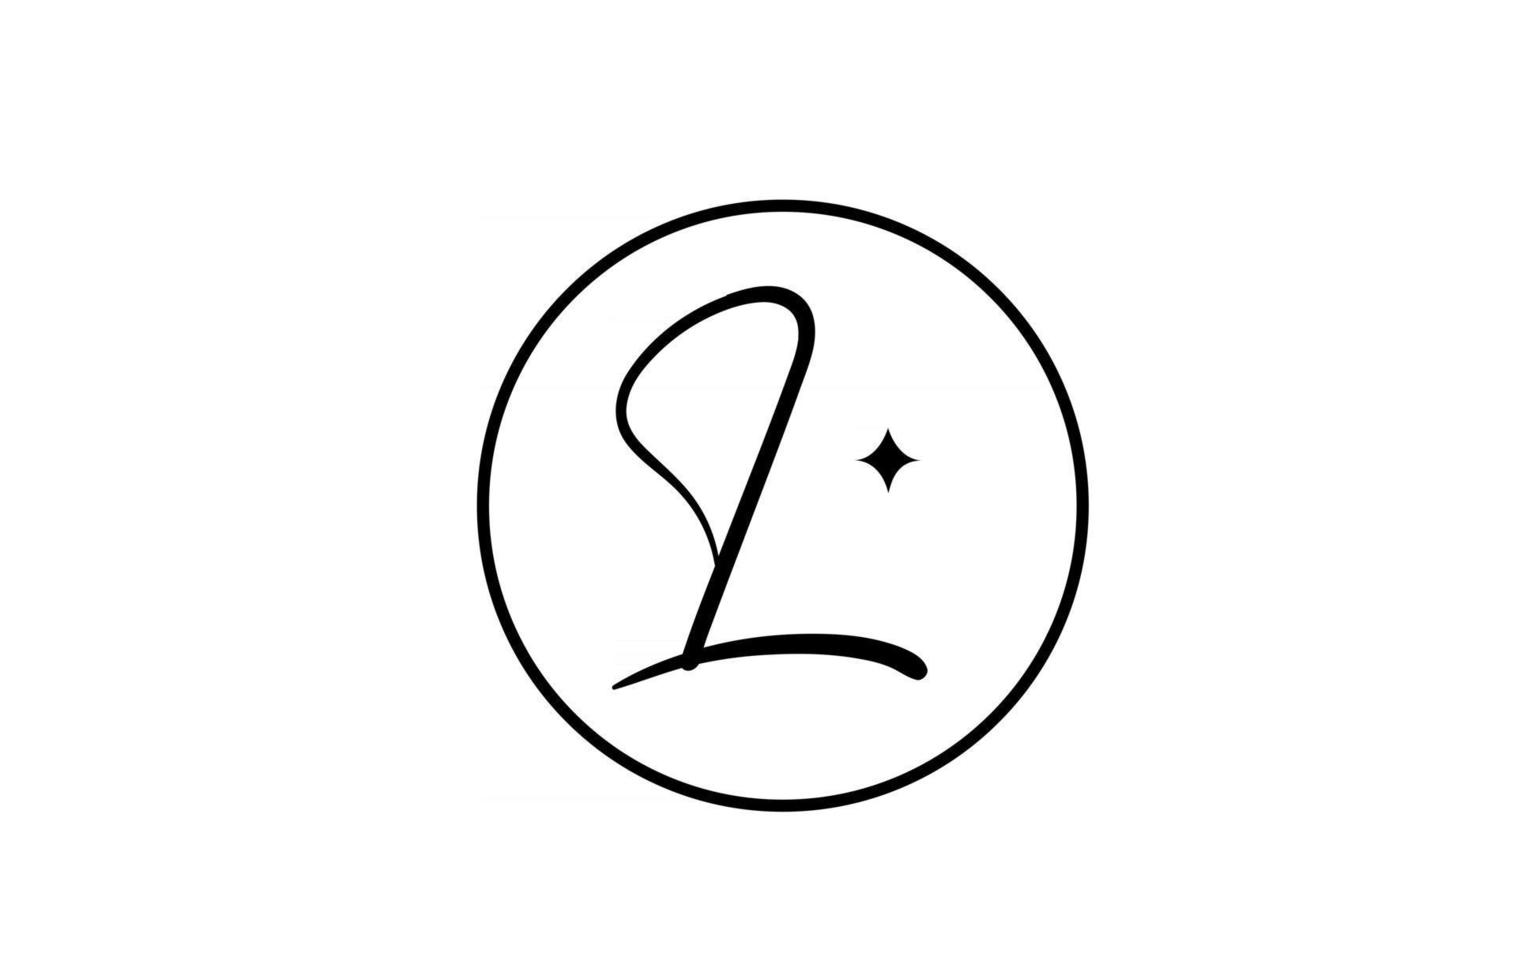 l logo della lettera dell'alfabeto per affari con stella e cerchio. lettere semplici ed eleganti per l'azienda. design dell'icona del marchio di identità aziendale in bianco e nero vettore